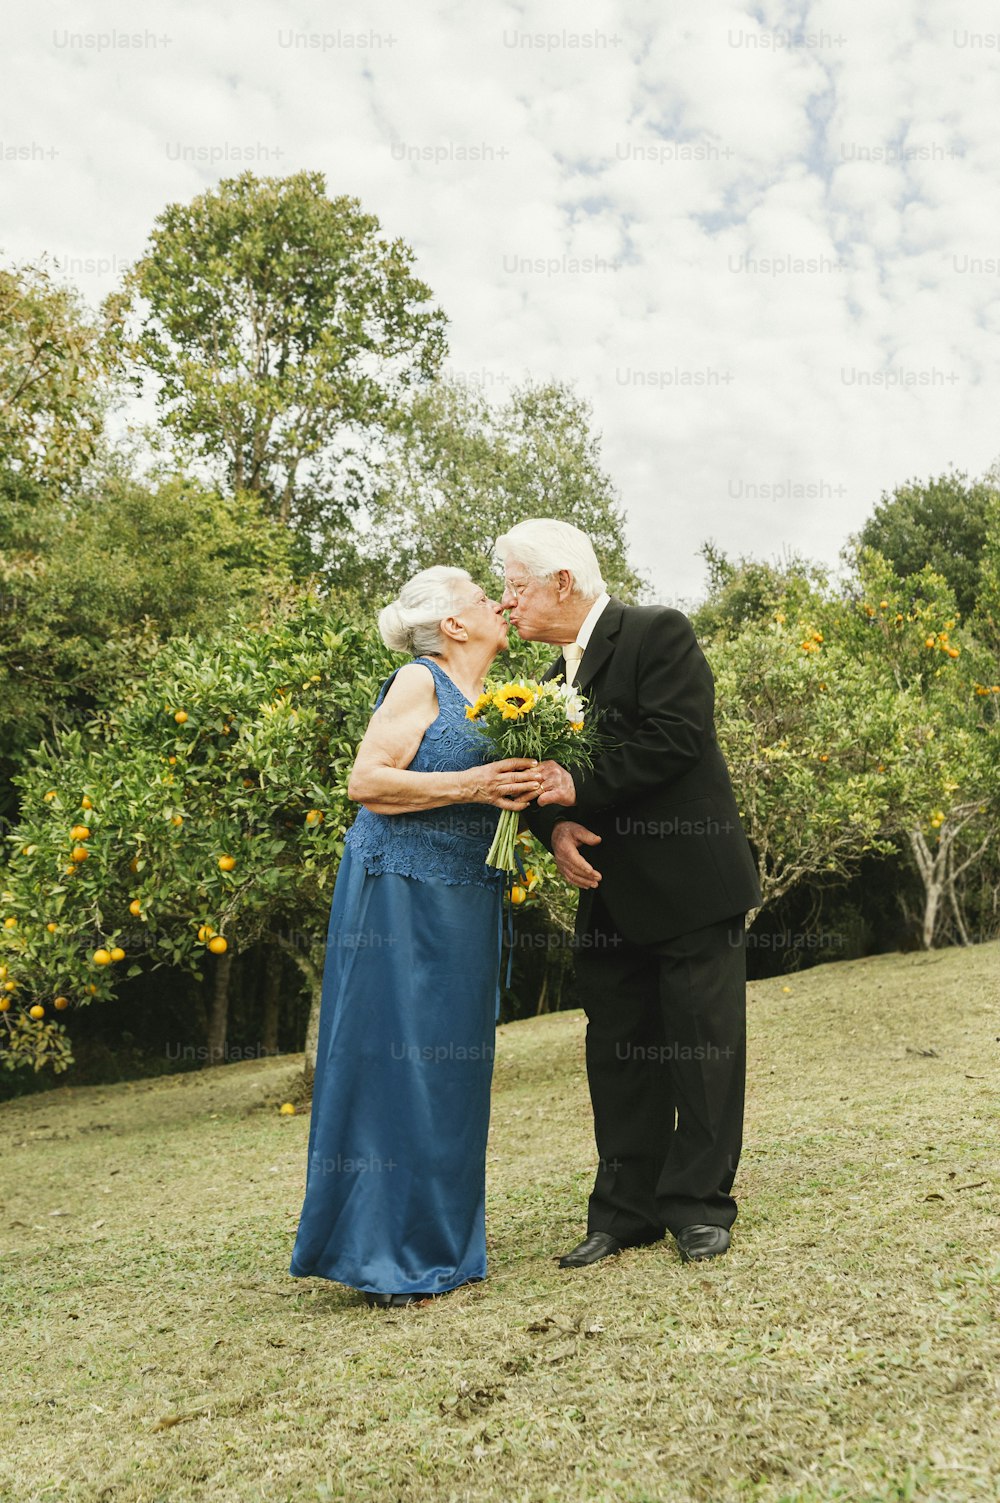 Un homme et une femme s’embrassent dans un champ